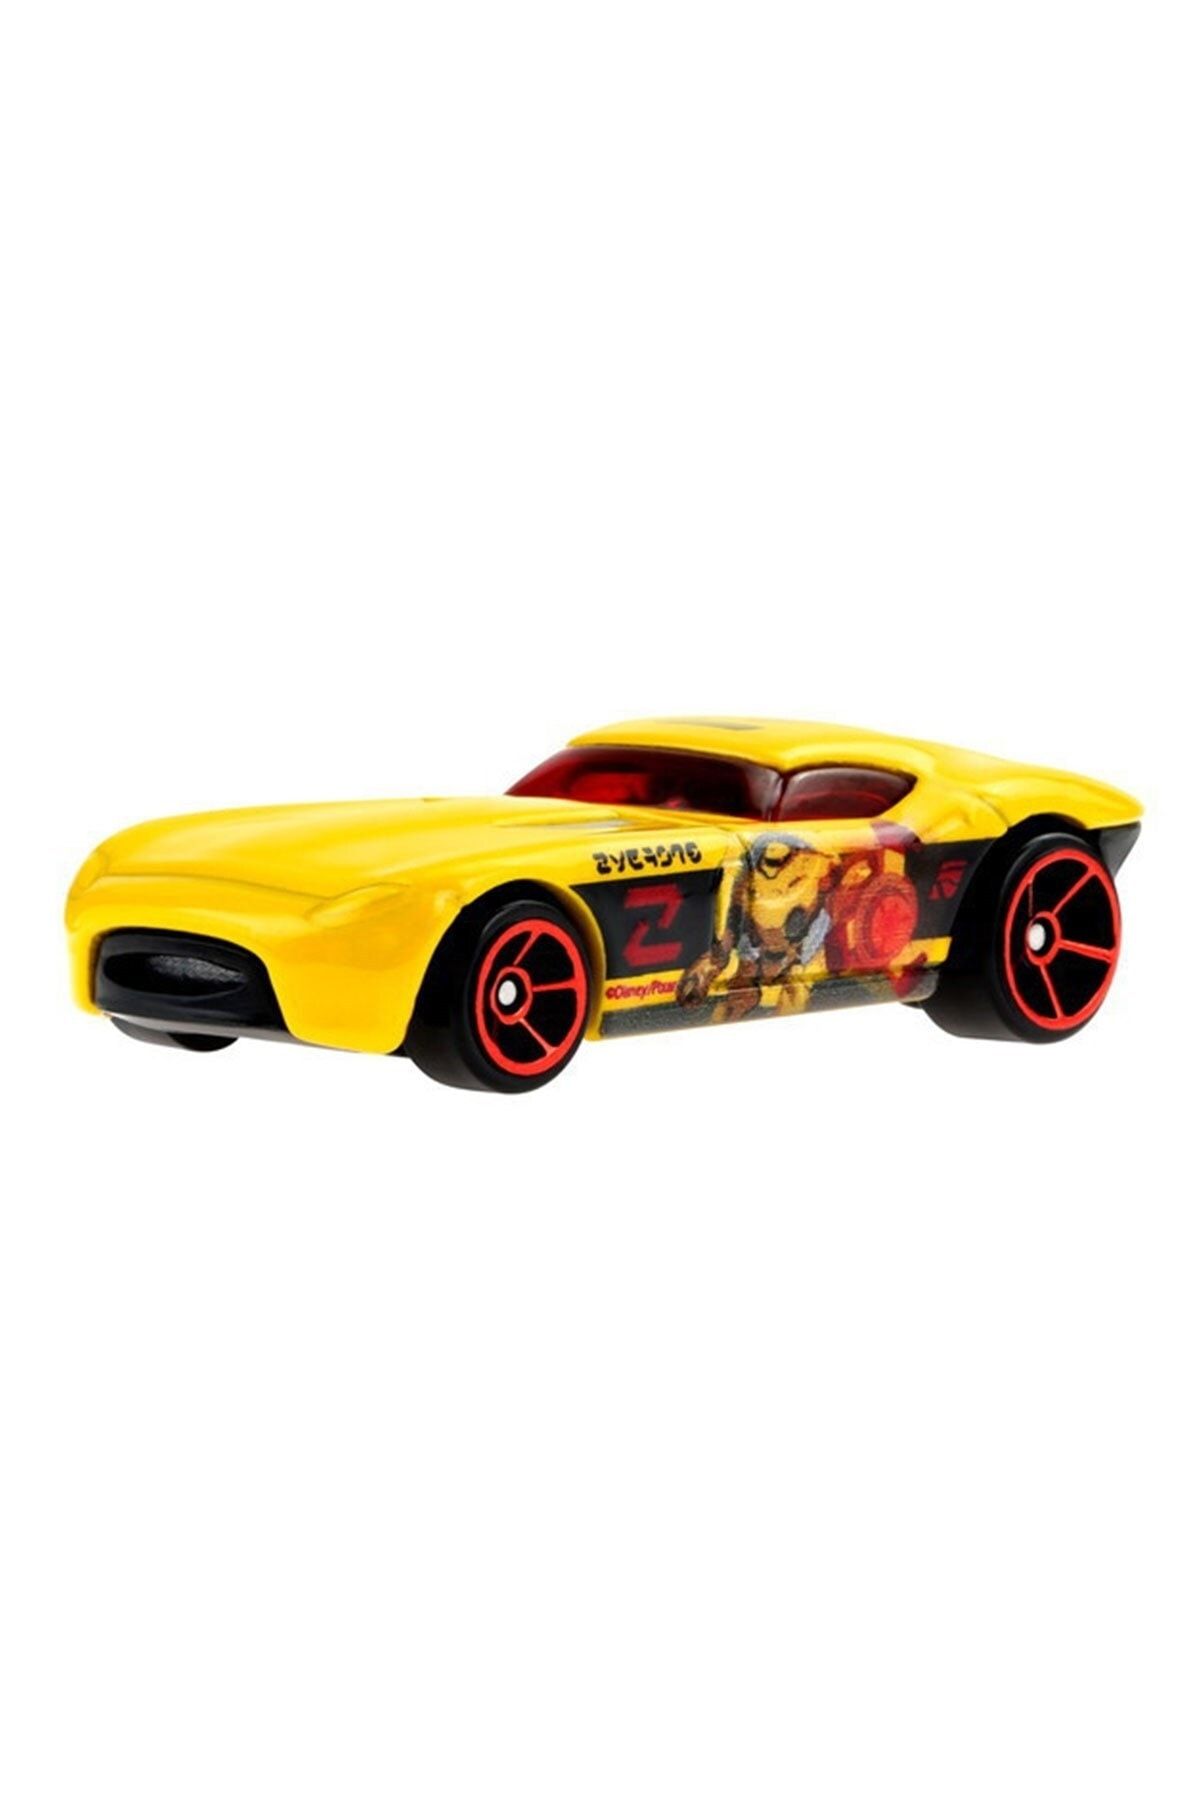 HOT WHEELS Temalı Eğlence Dünyası Arabaları Toy Story Buzz Lightyear Hfw34 - Fast Felion